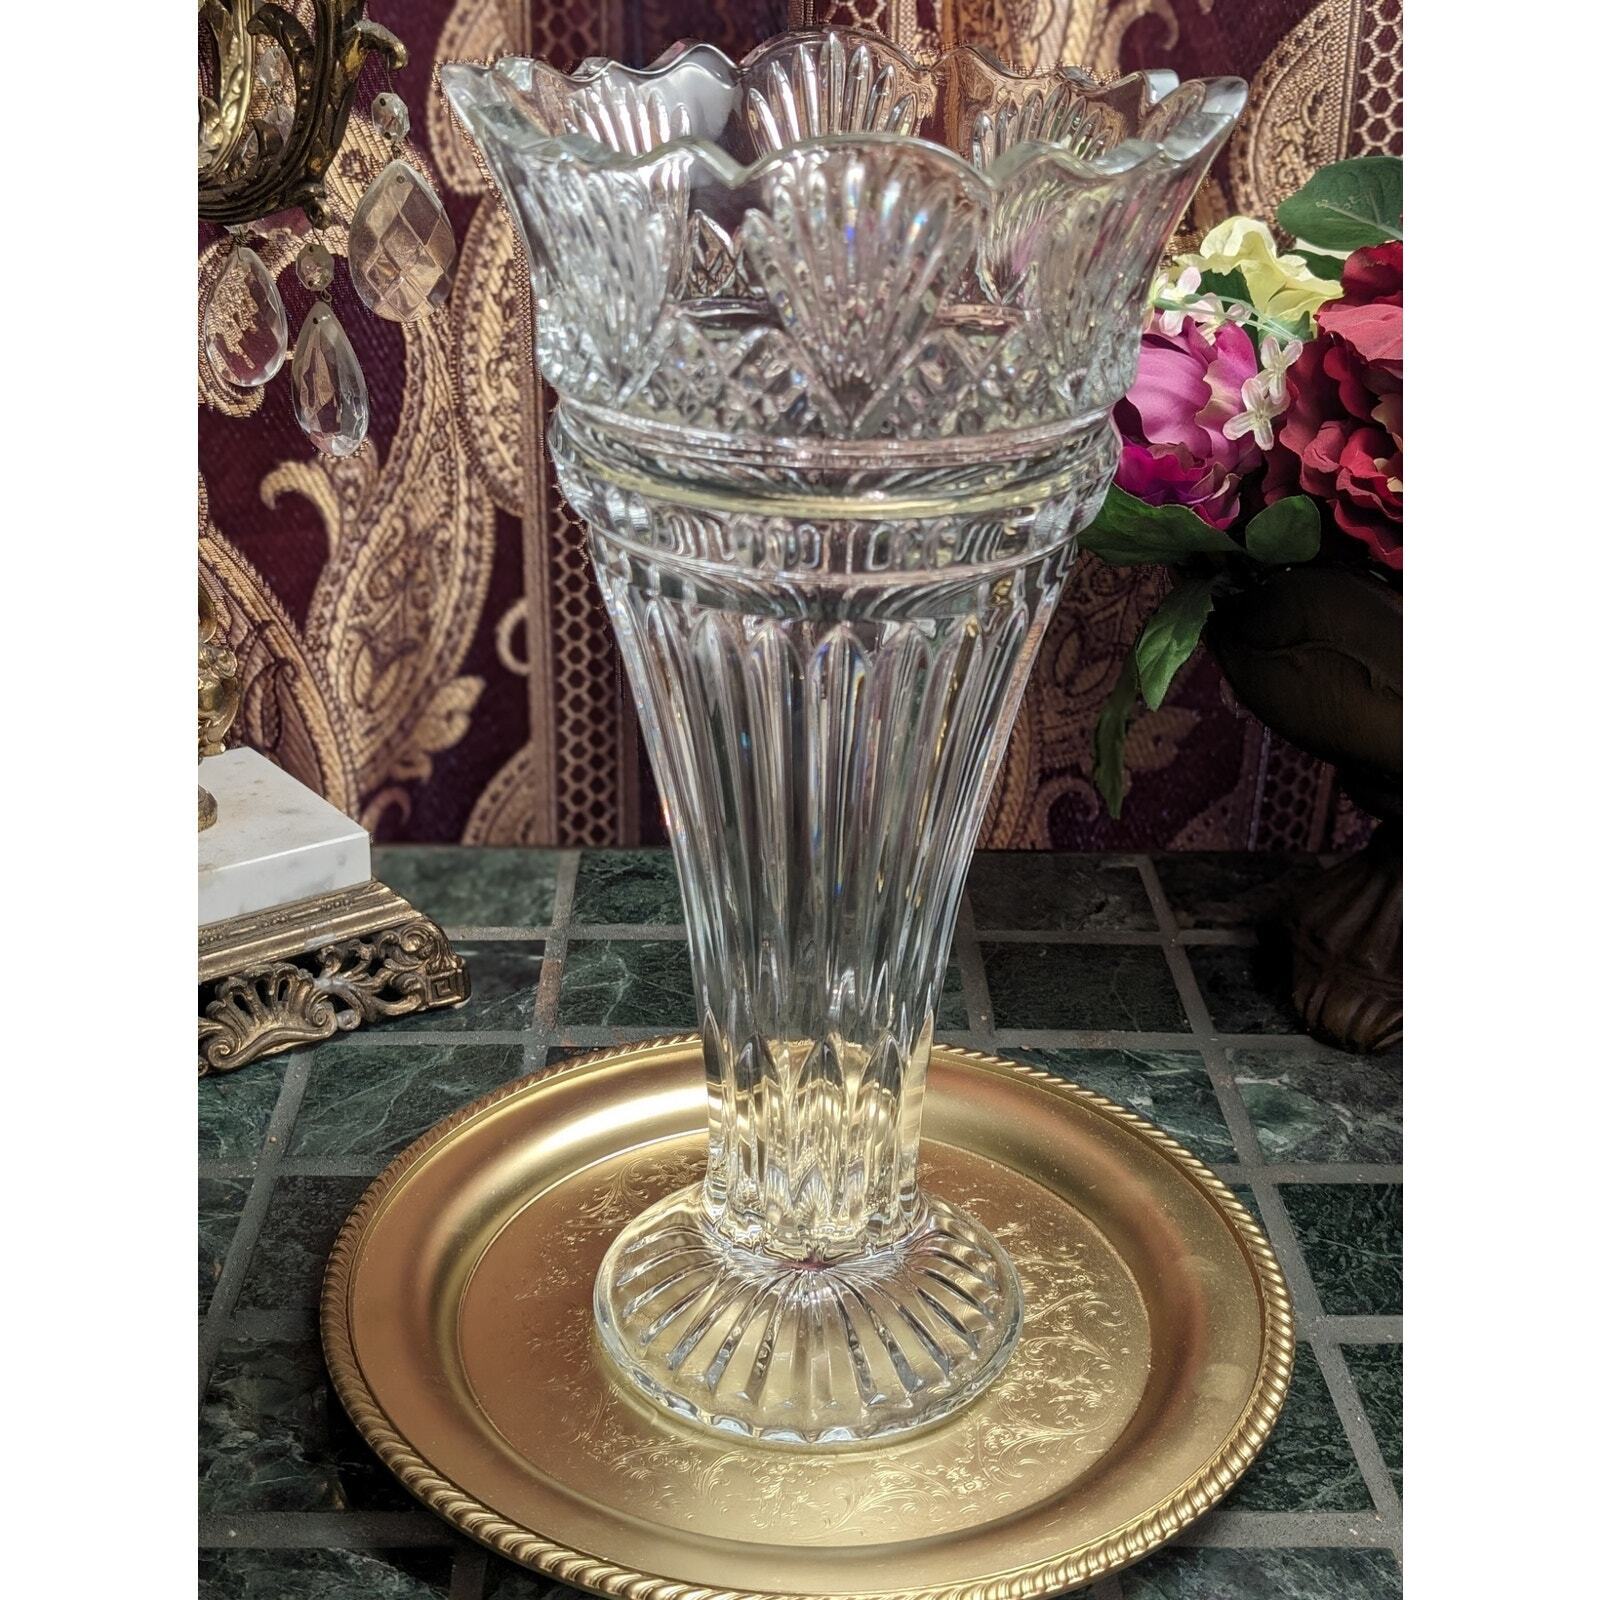 Large Ornate Shannon of Ireland 22% Lead Crystal Vase by Godinger 